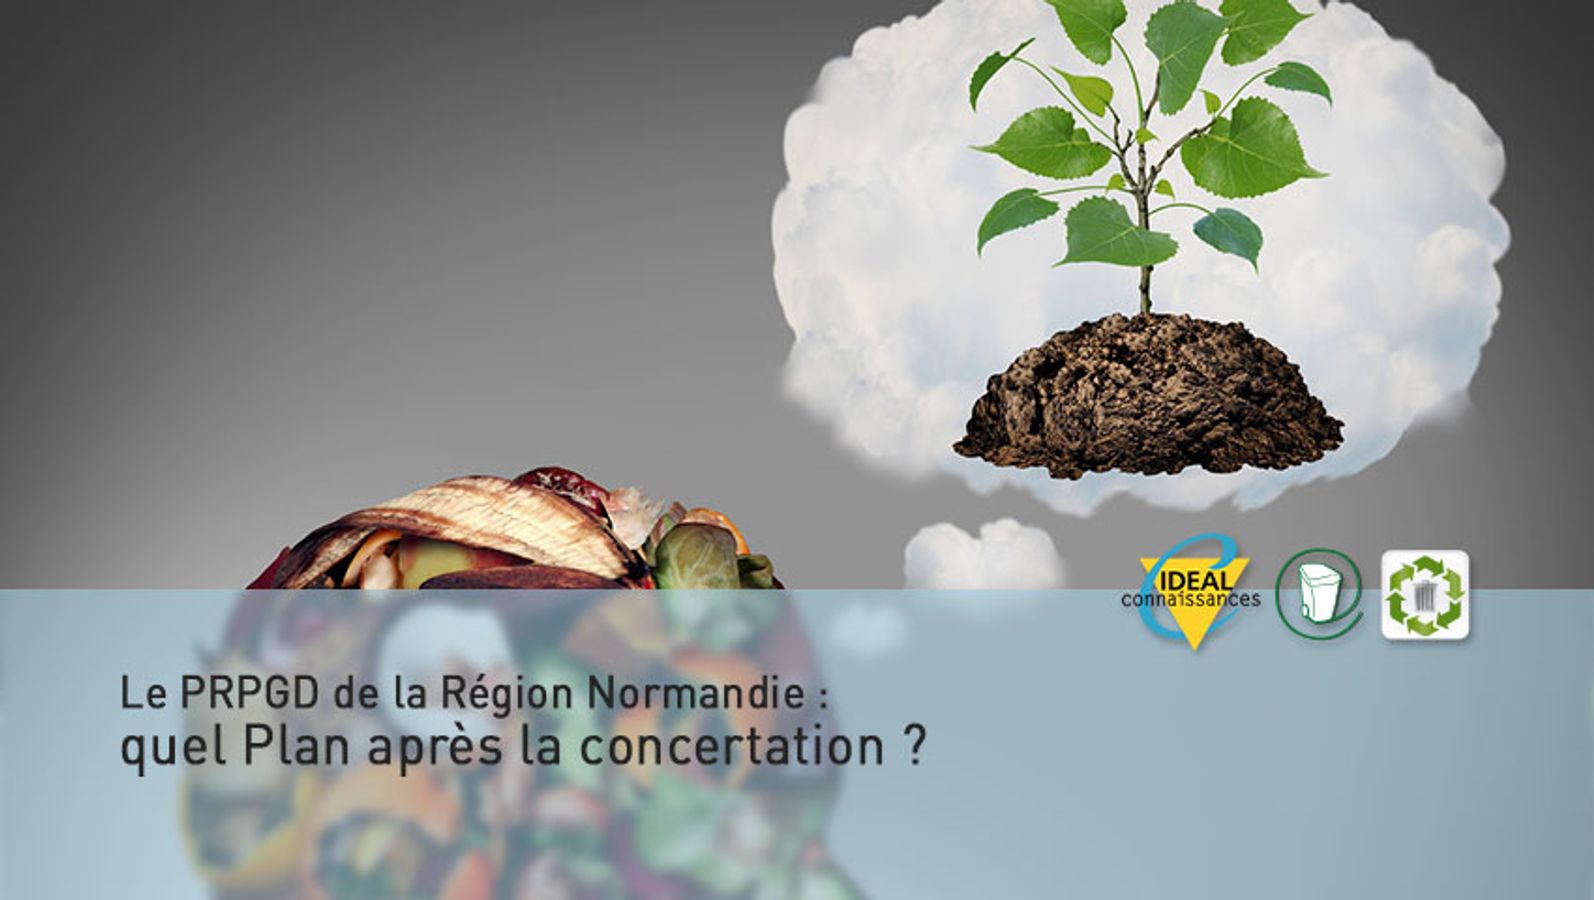 Le PRPGD de la Région Normandie : quel Plan après la concertation ?